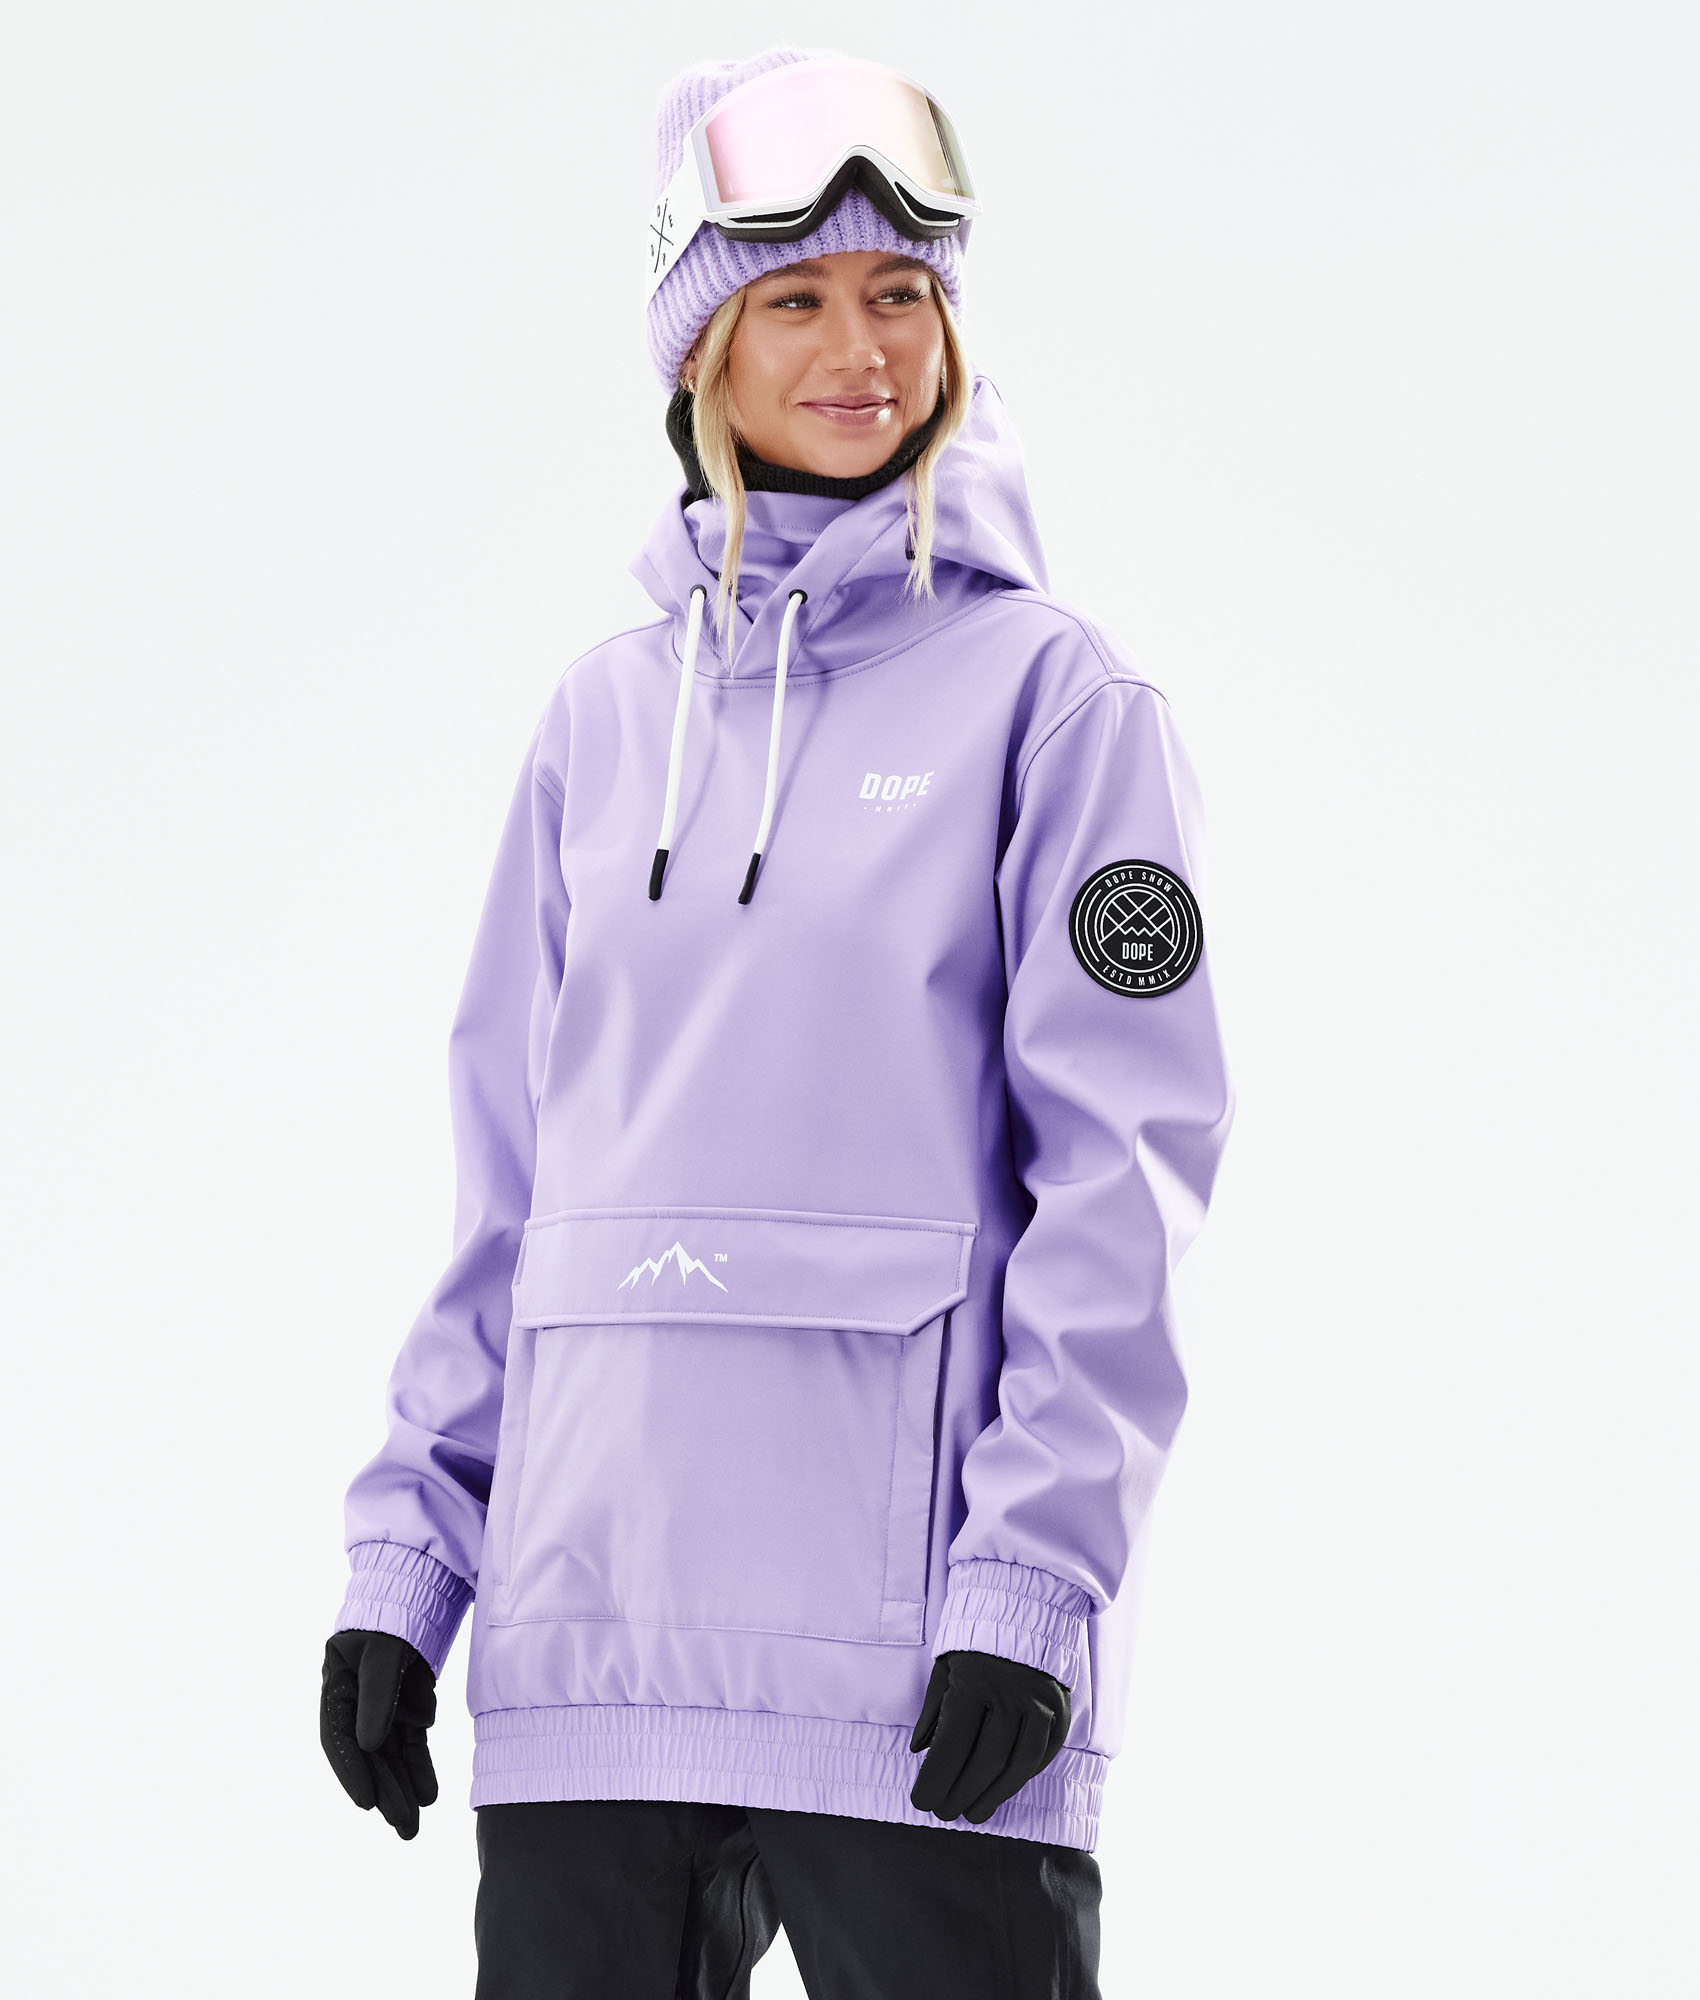 Dope Wylie W Snowboard Jacket Women Capital Faded Violet Dopesnow